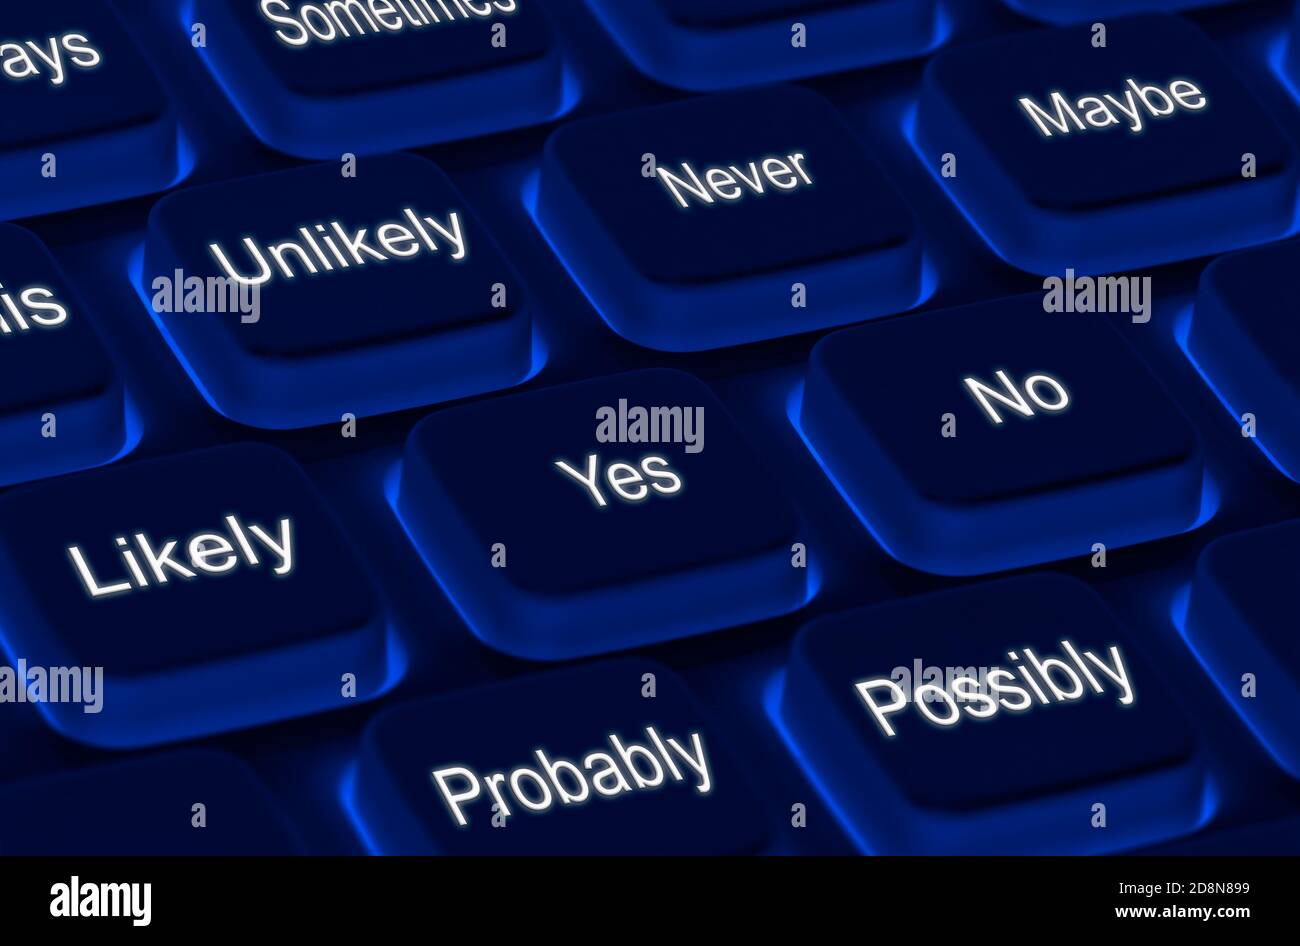 Online-Umfrage oder Fragebogen Konzeptdarstellung, mit Tastatur mit verschiedenen Antworten auf Fragen. Stockfoto